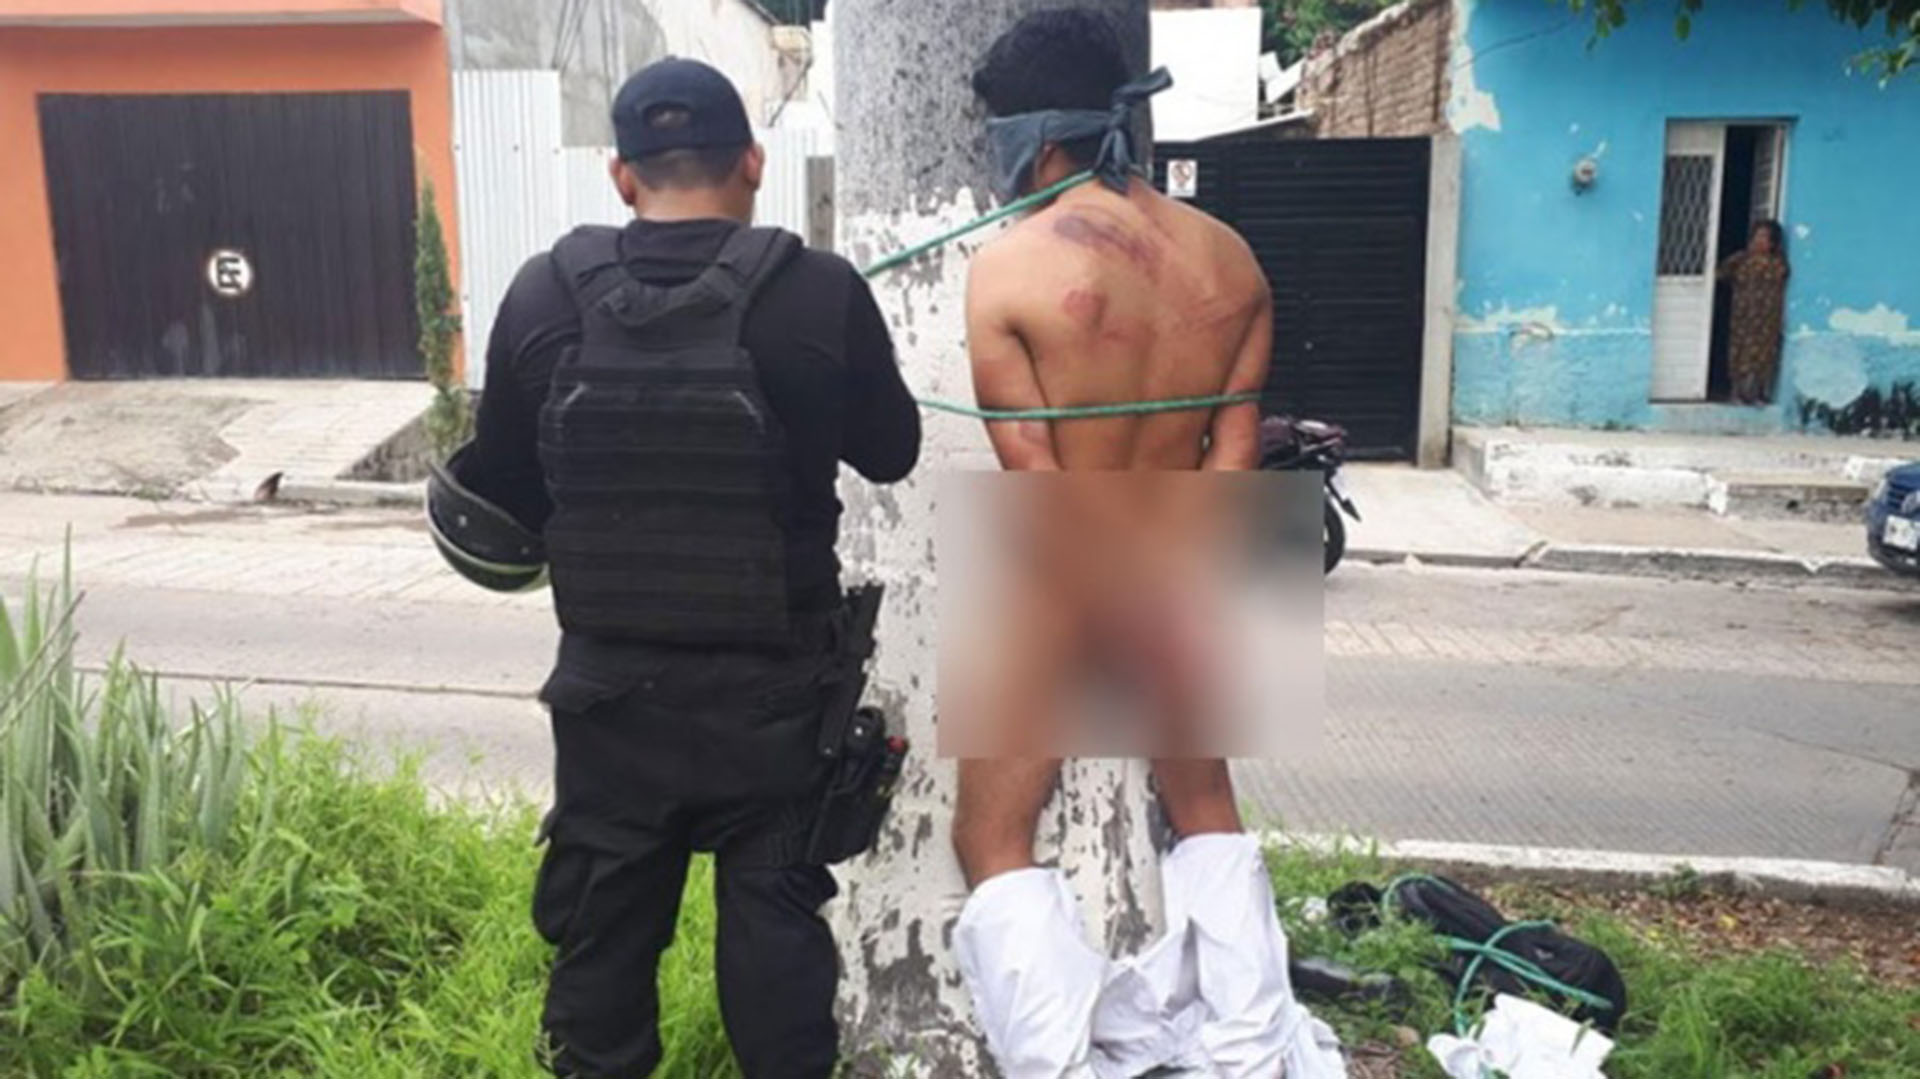 Al supuesto asaltante lo golpearon y amarraron a un árbol., en Chiapas (Foto: Archivo)